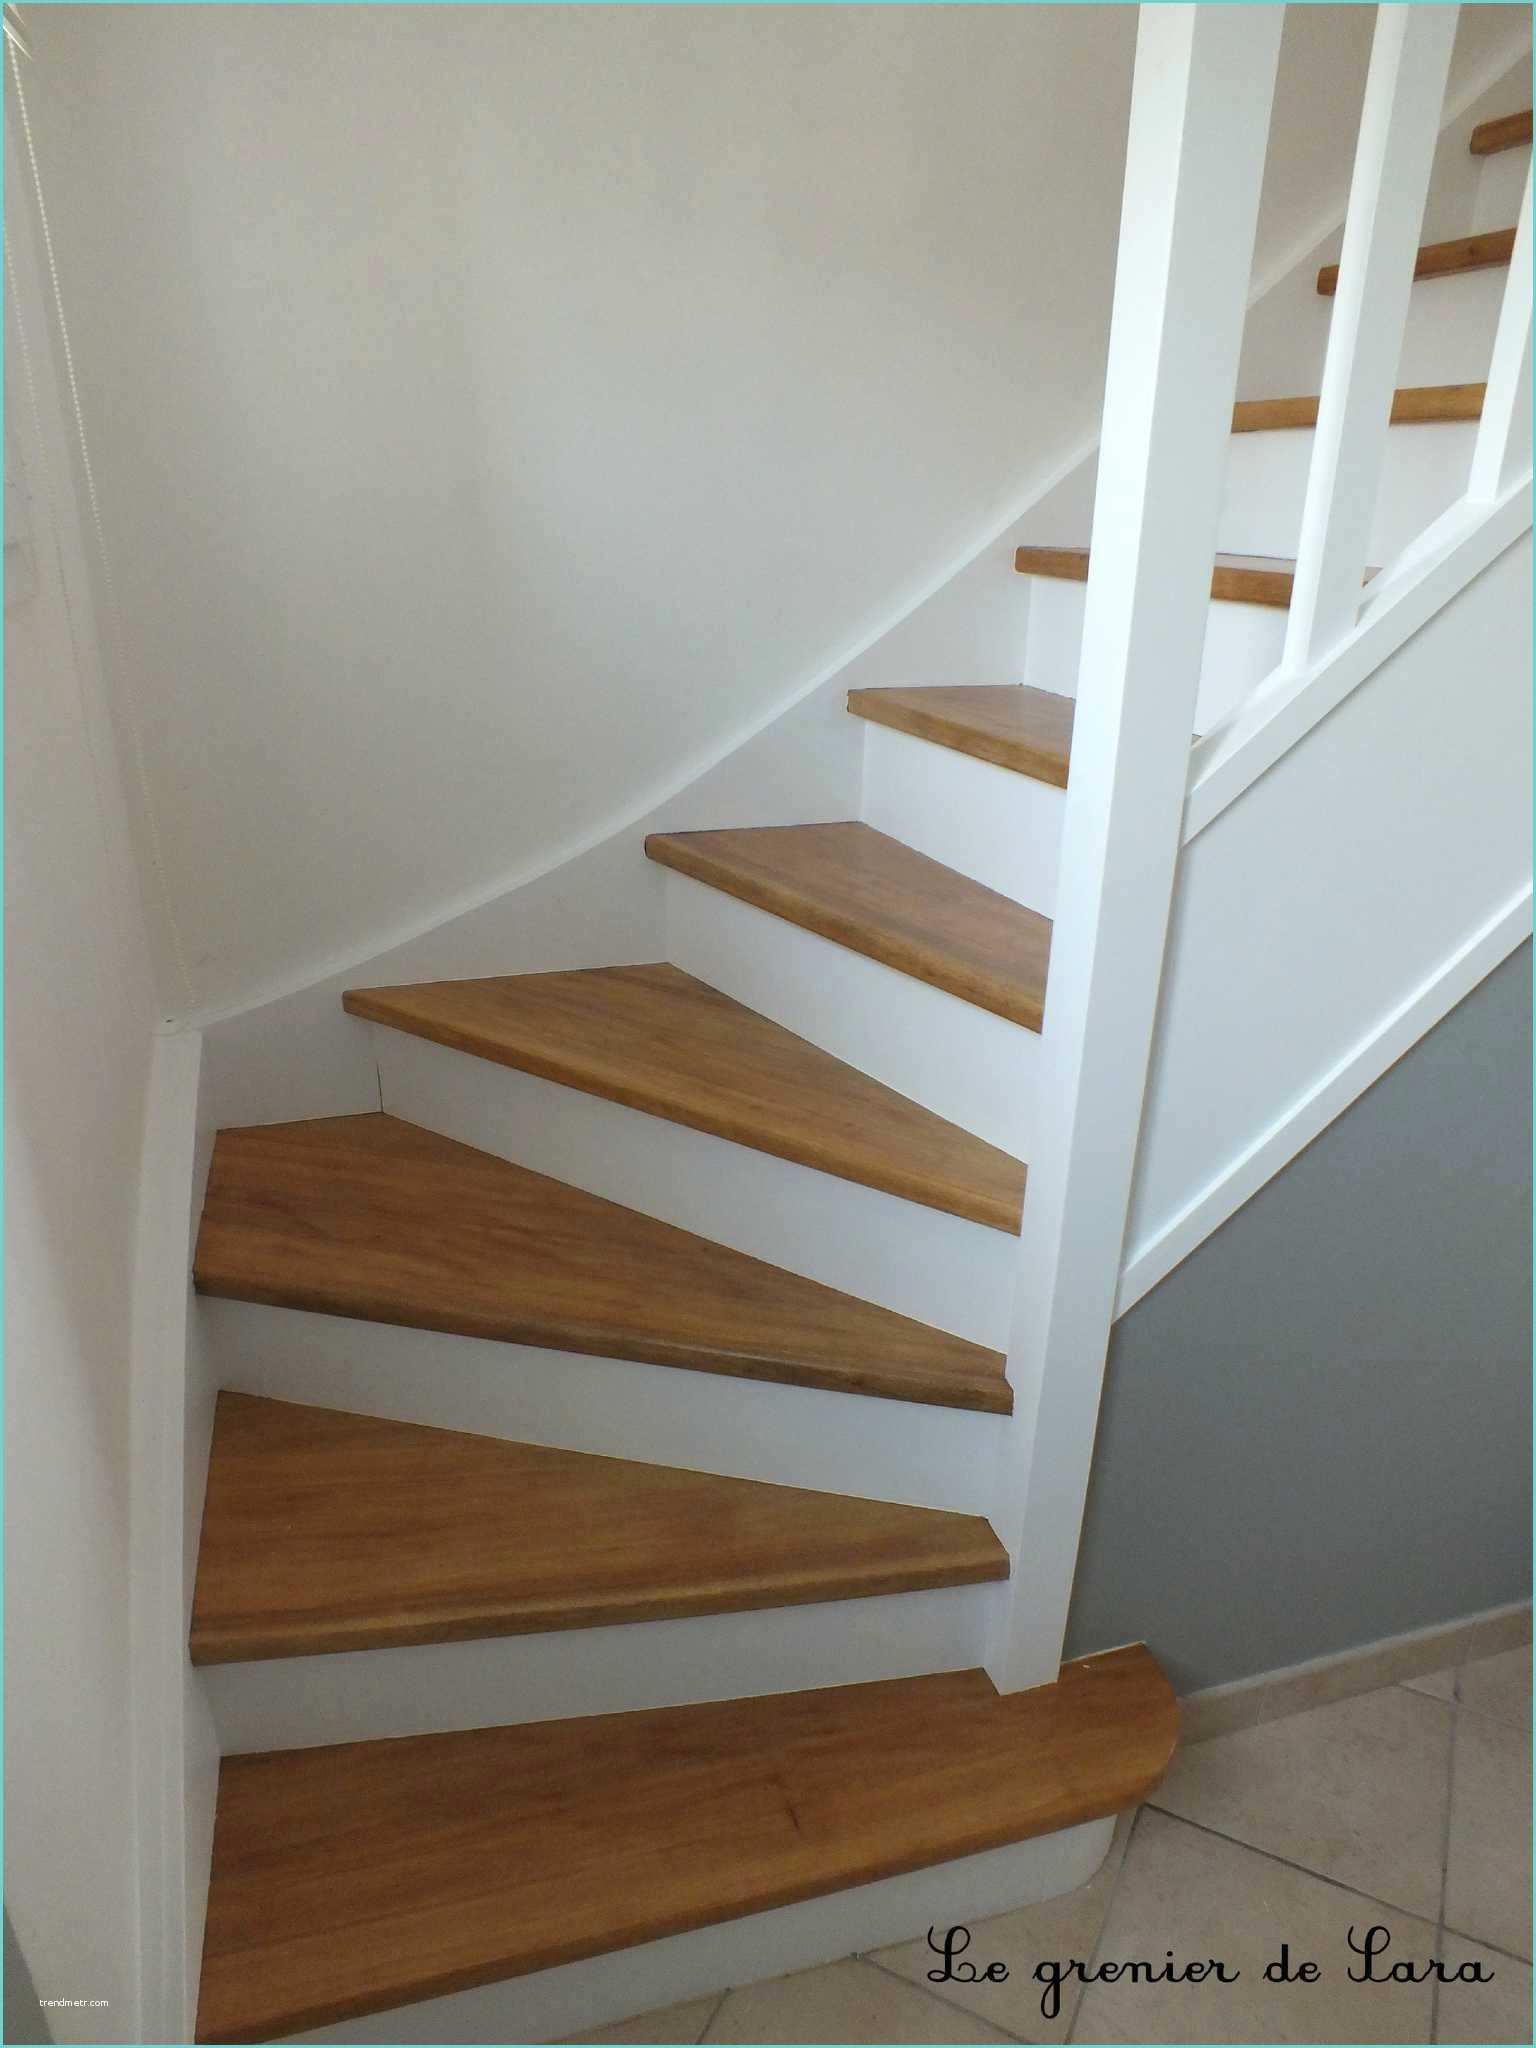 Escalier Repeint En Blanc Enchanteur Repeindre Un Escalier En Blanc Et Peindre Un